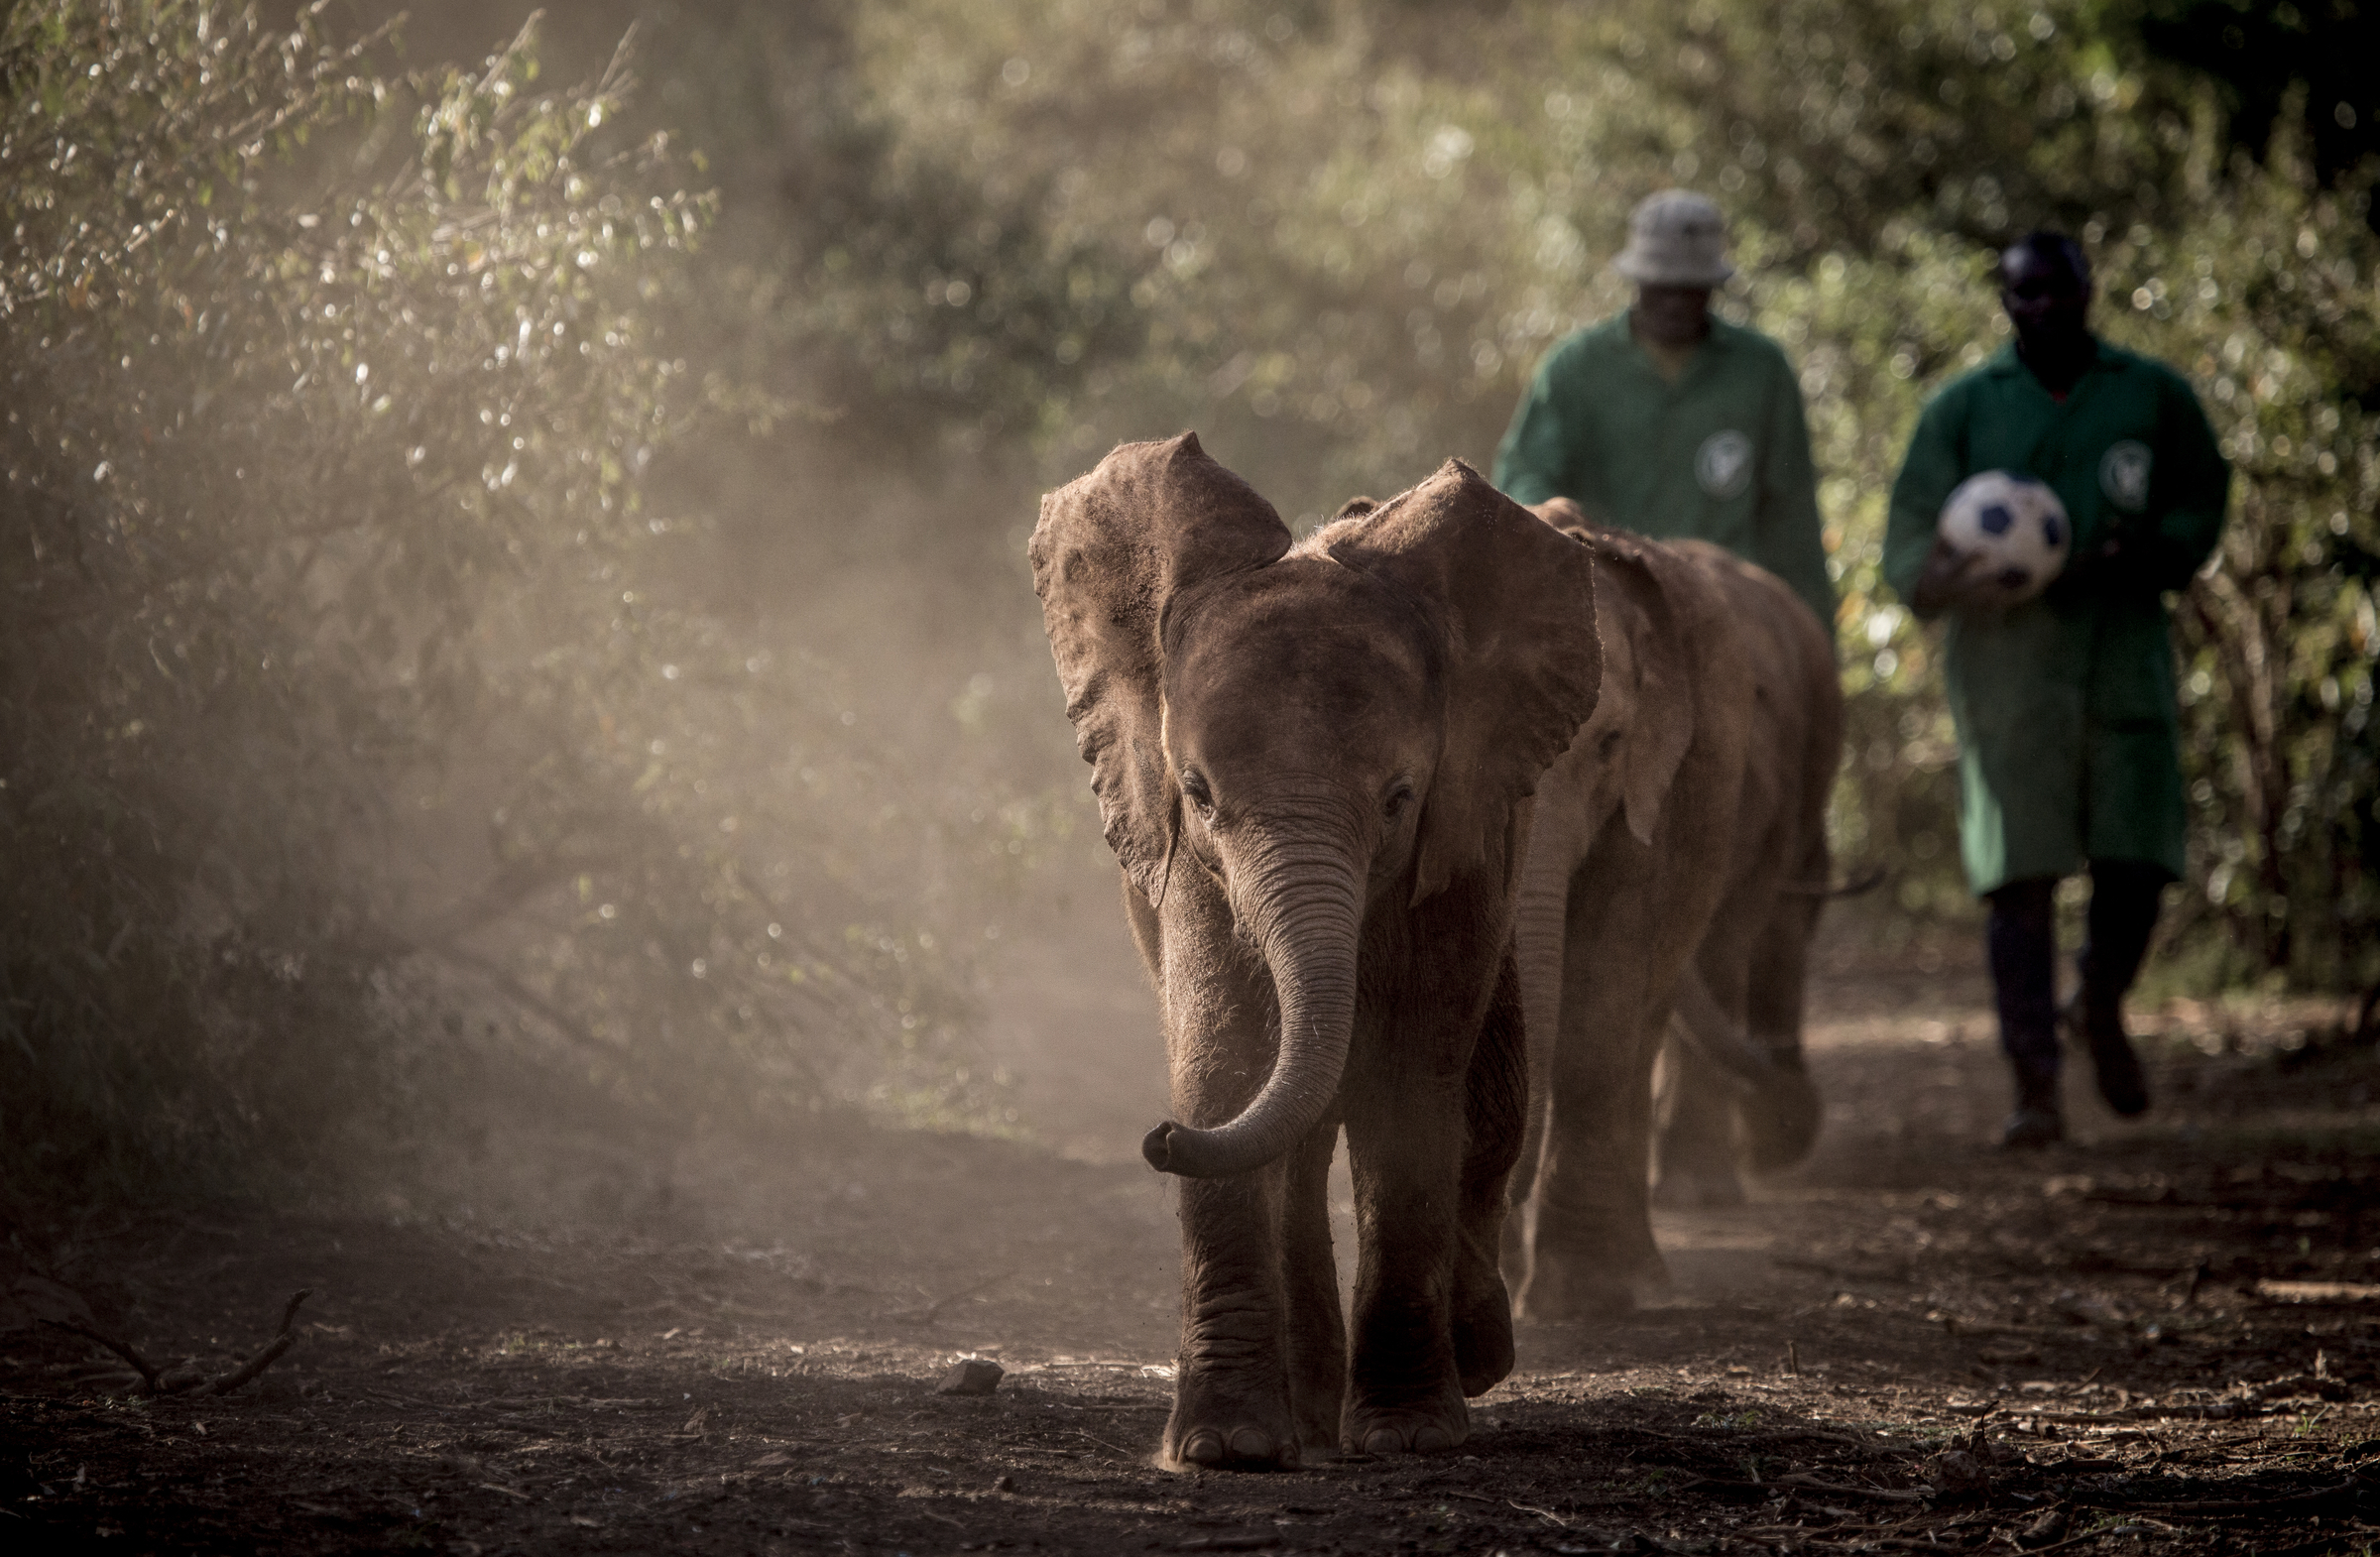 Baby Elephants, David Sheldrick Trust, Kenya